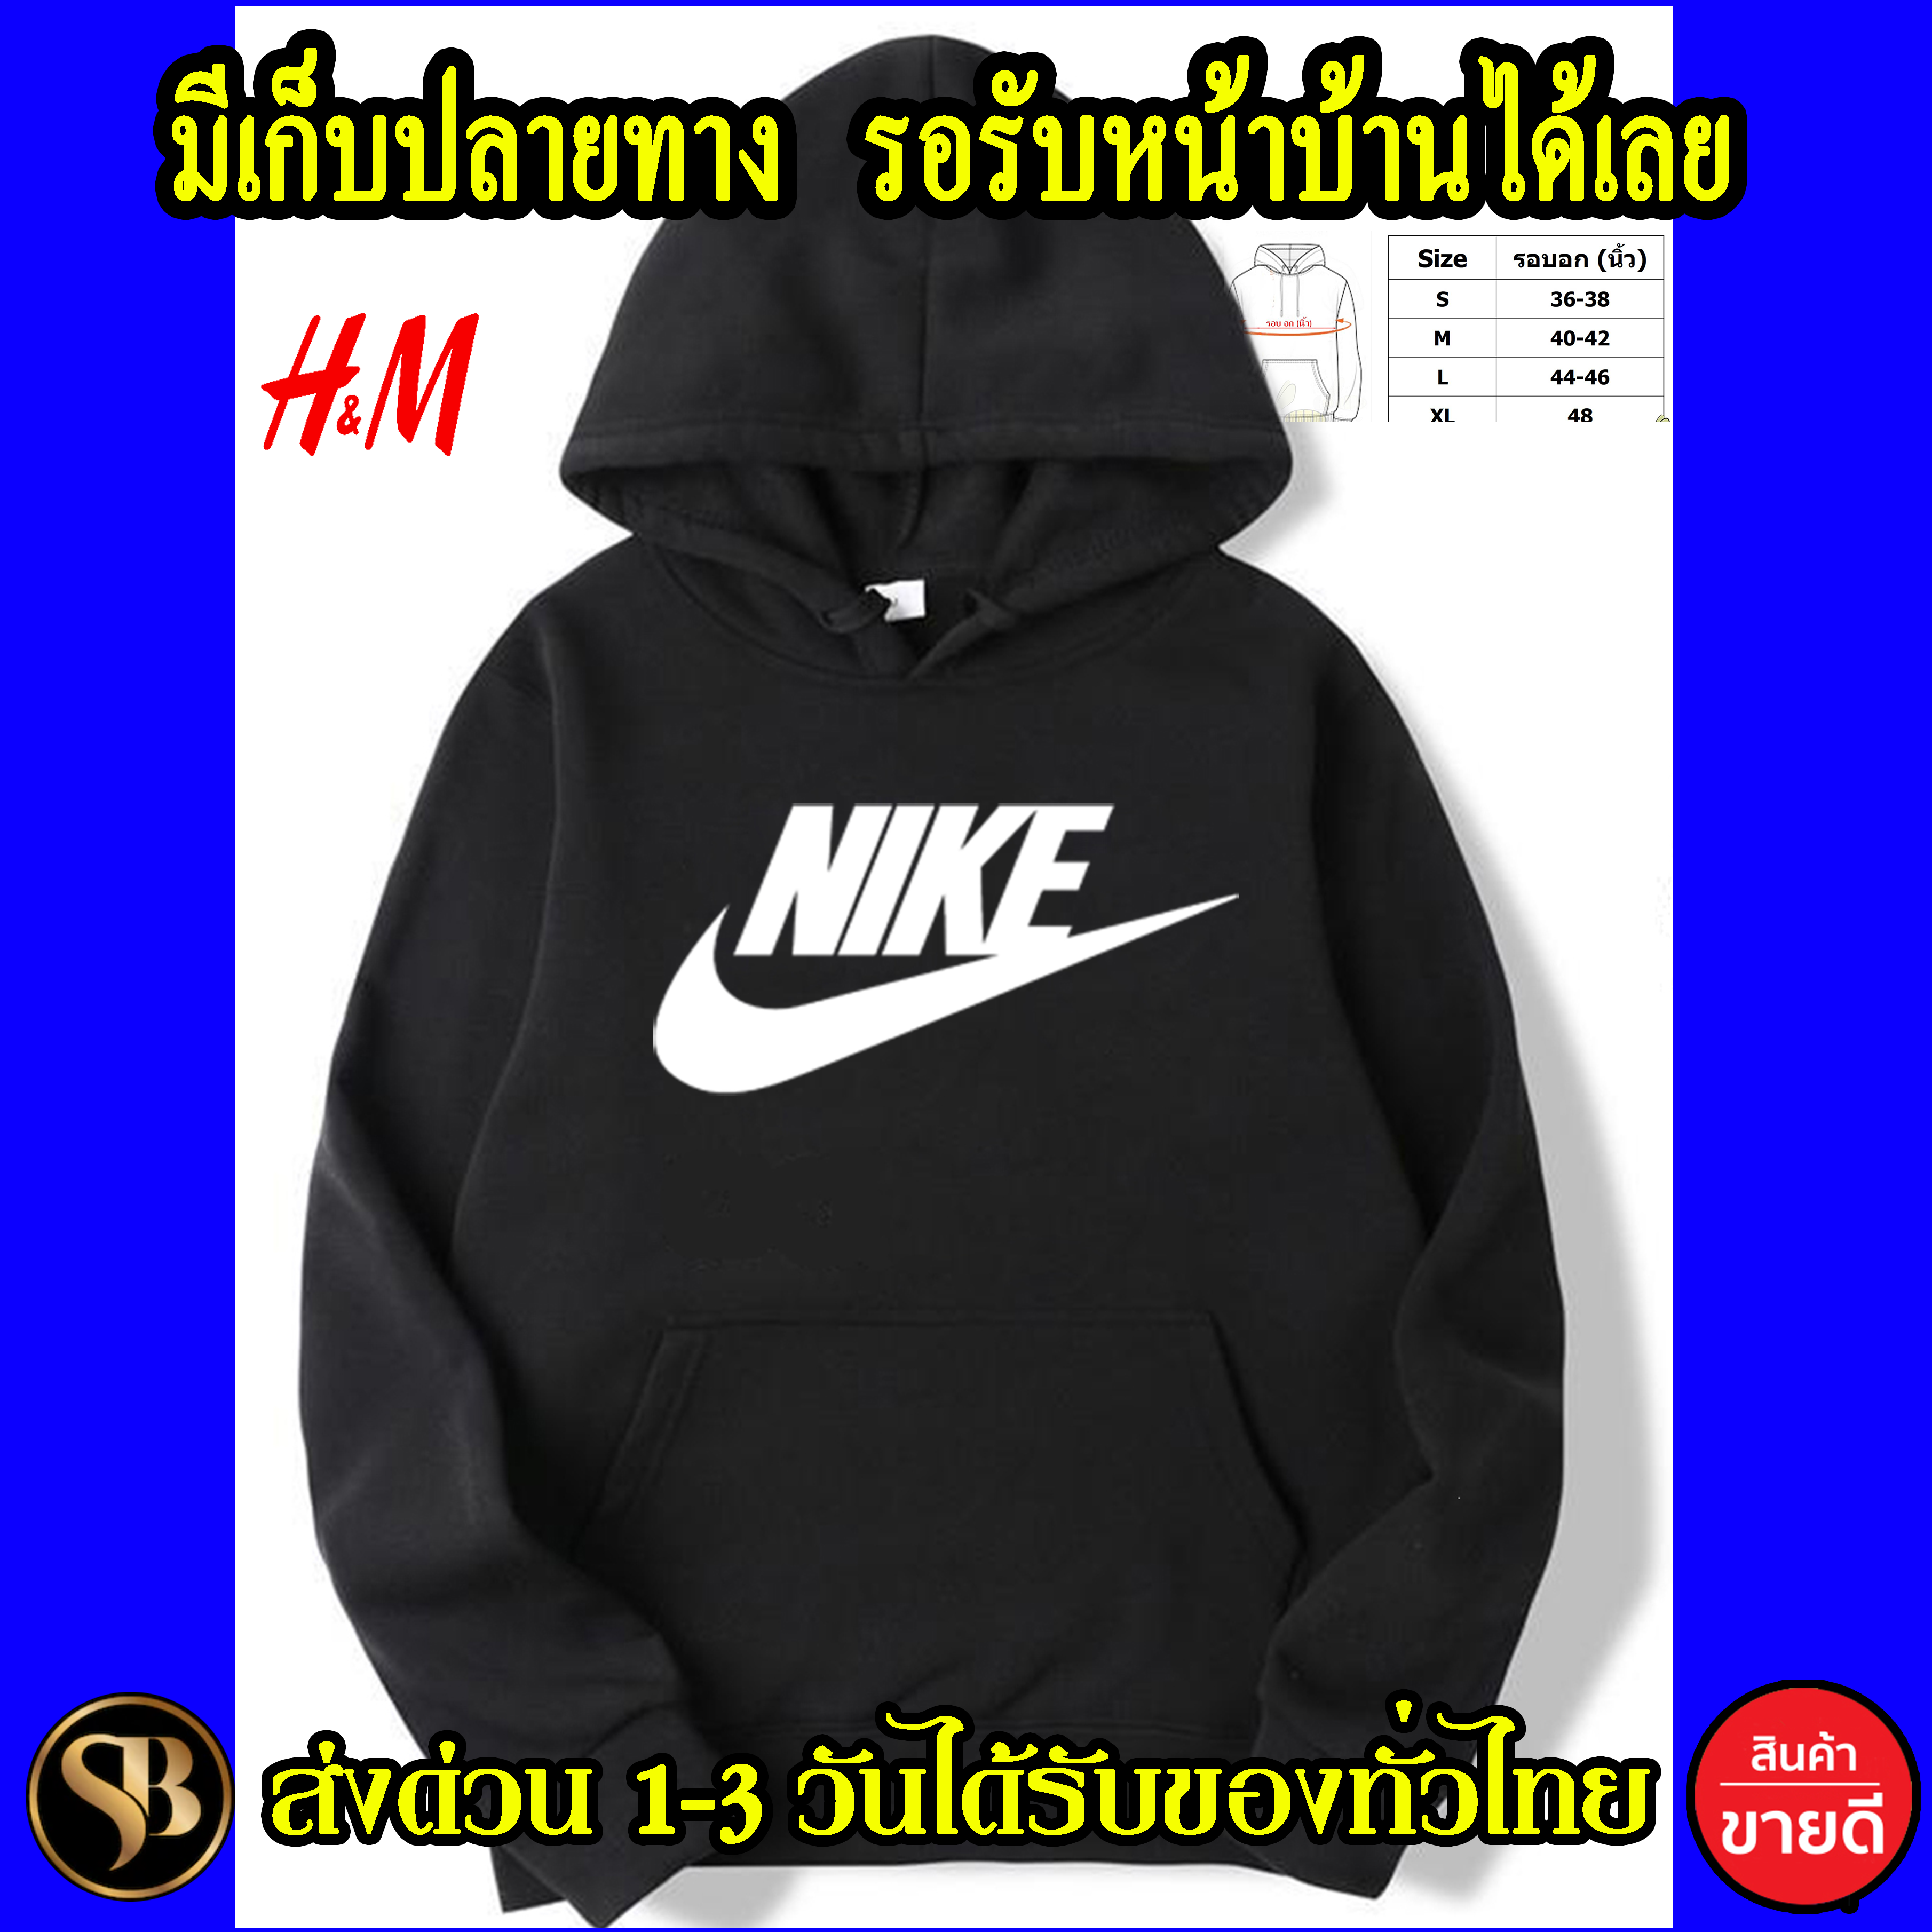 NIKE เสื้อฮู้ด Nike เสื้อกันหนาว งาน H&M โลโก้สีสด HOODIE แบบสวม ซิป สกรีนแบบเฟล็ก PU สวยสดไม่แตกไม่ลอก ส่งด่วนทั่วไทย